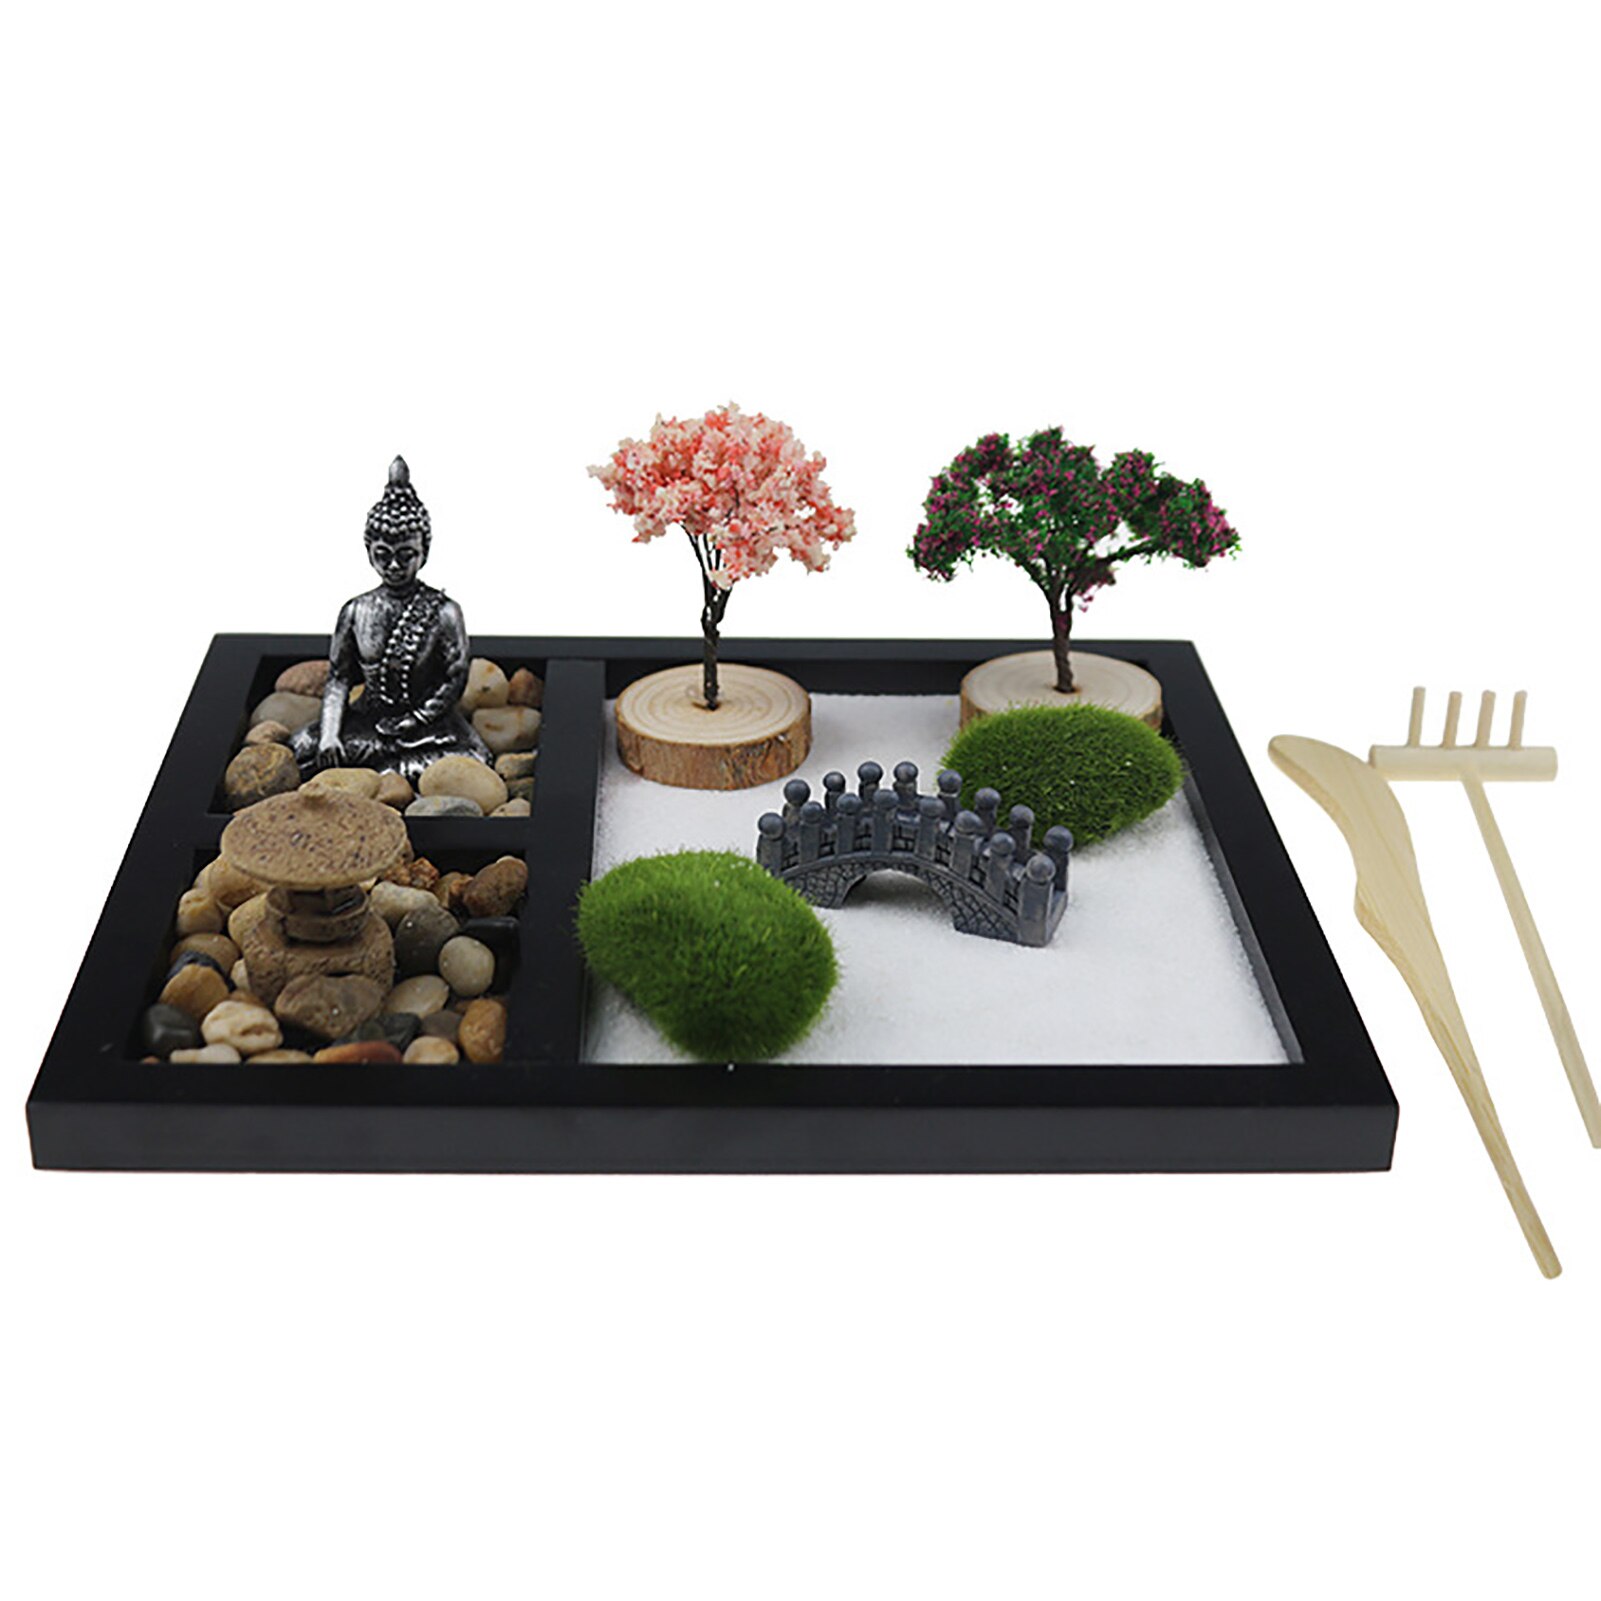 Japanese Zen Sand Garden Tabletop Mini Zen Garden Kit For Home Office Tabletop Decor For Concentration Relaxation Meditation 1